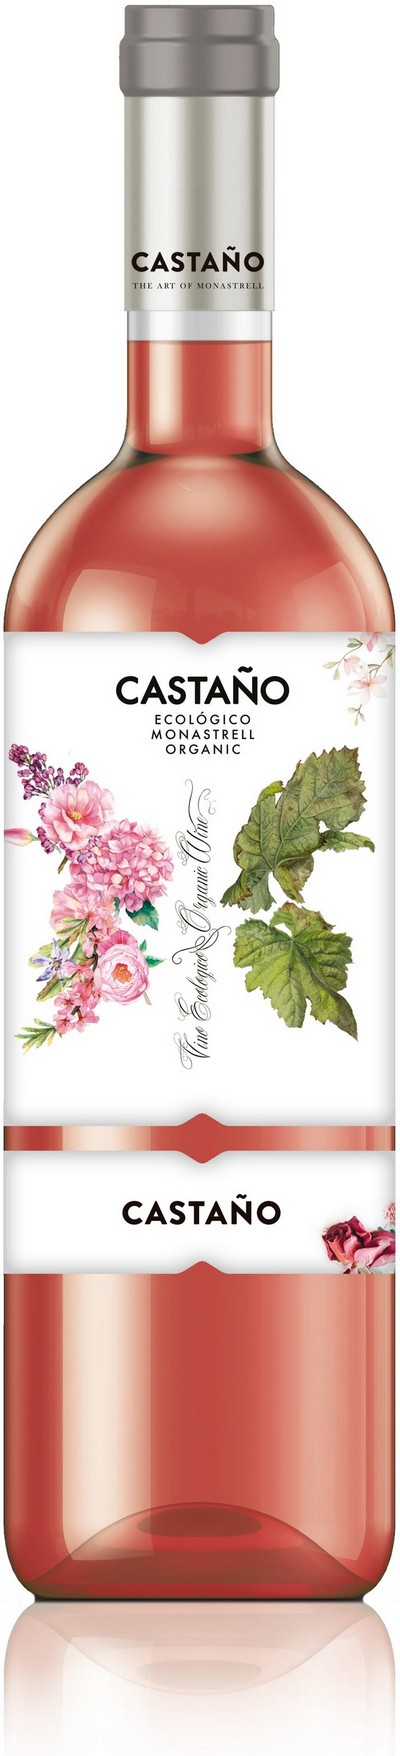 castano-ecologico-monastrell-rosado-2020